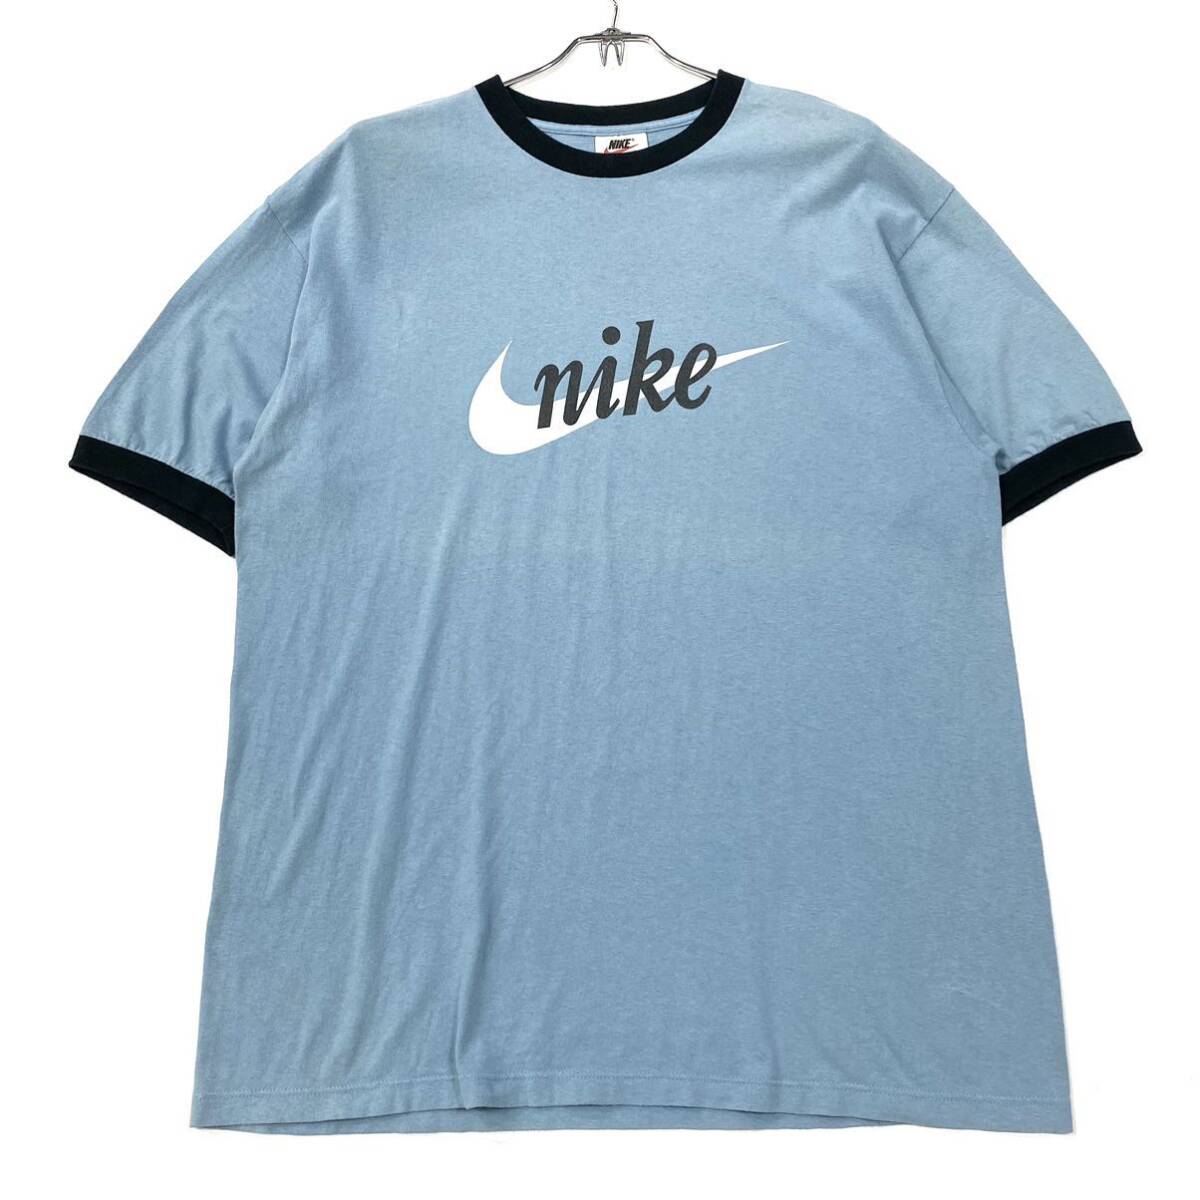 USA製 NIKE/ナイキ リンガーネックTシャツ メンズL ライトブルー/ネイビーの画像1